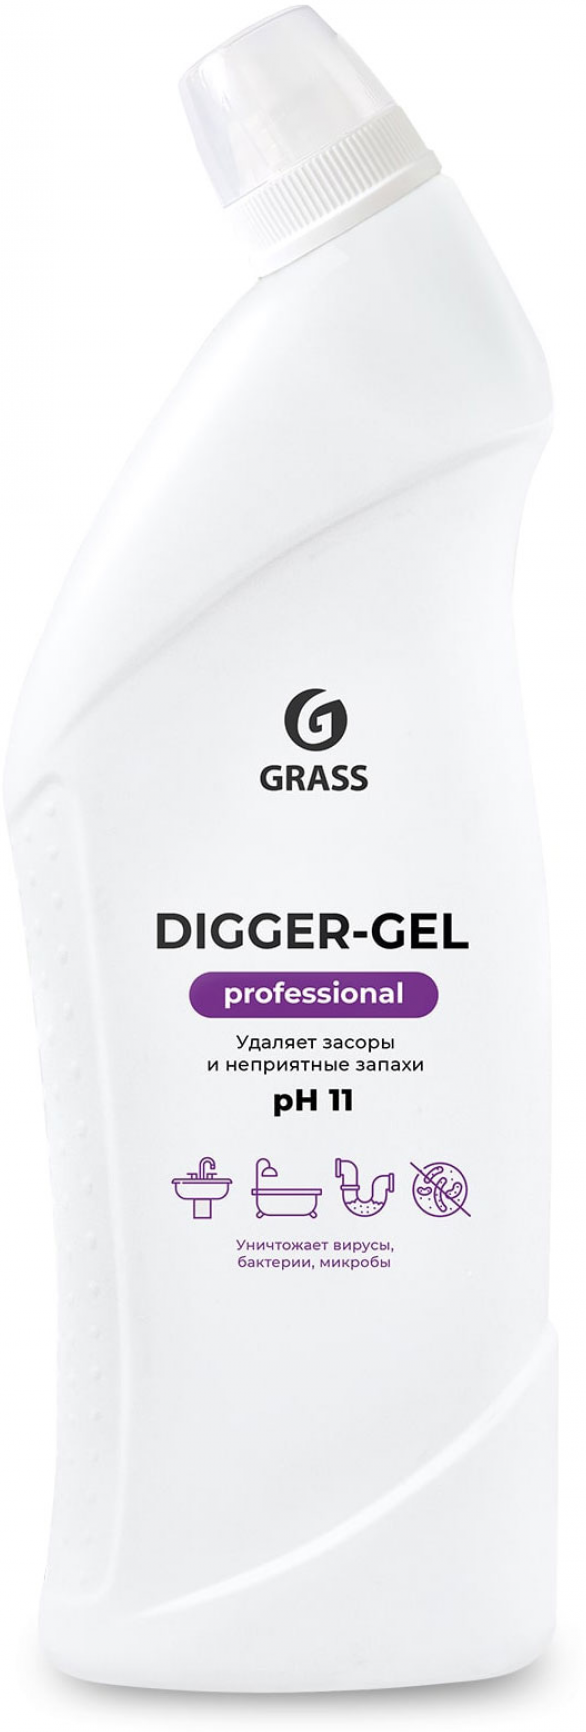 Средство для прочистки канализационных труб Grass "Digger-gel Professional" 1 л